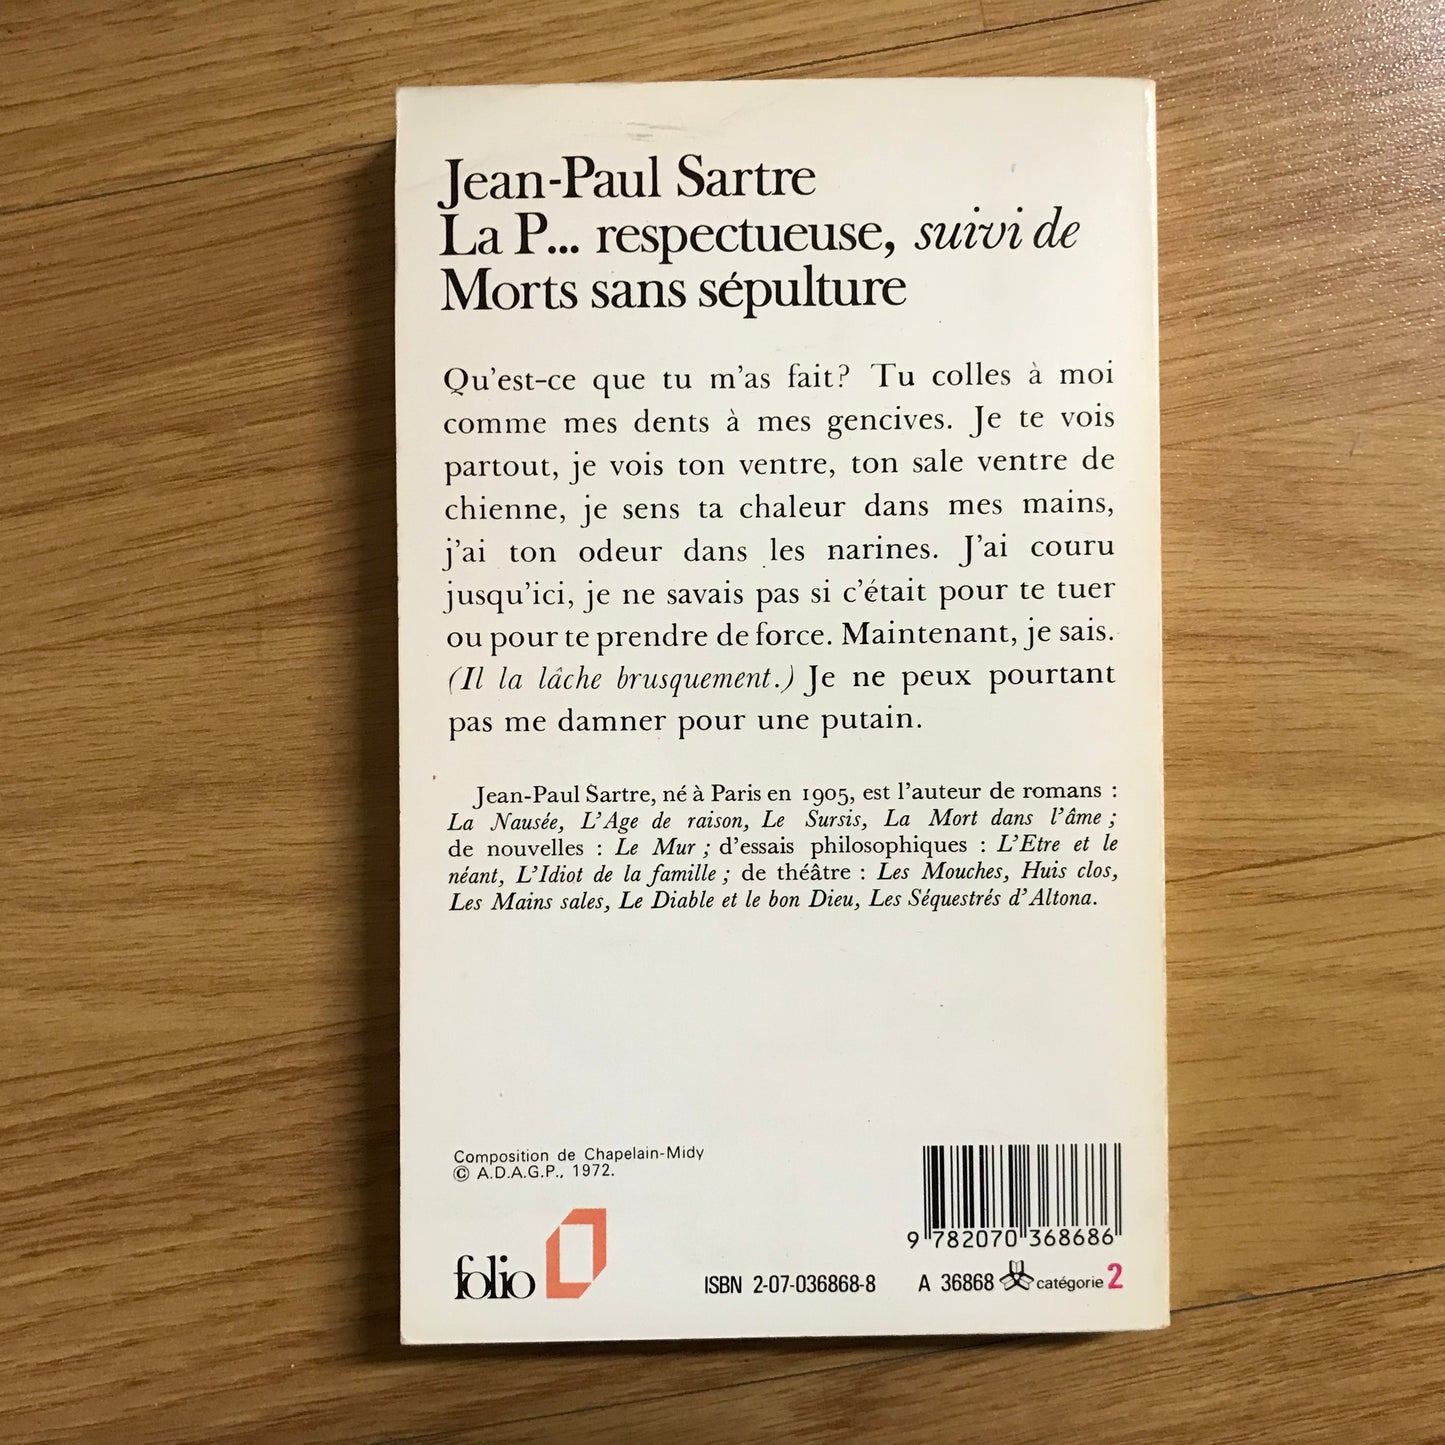 Sartre, Jean-Paul - La P… respectueuse suivi de Morts sans sépulture